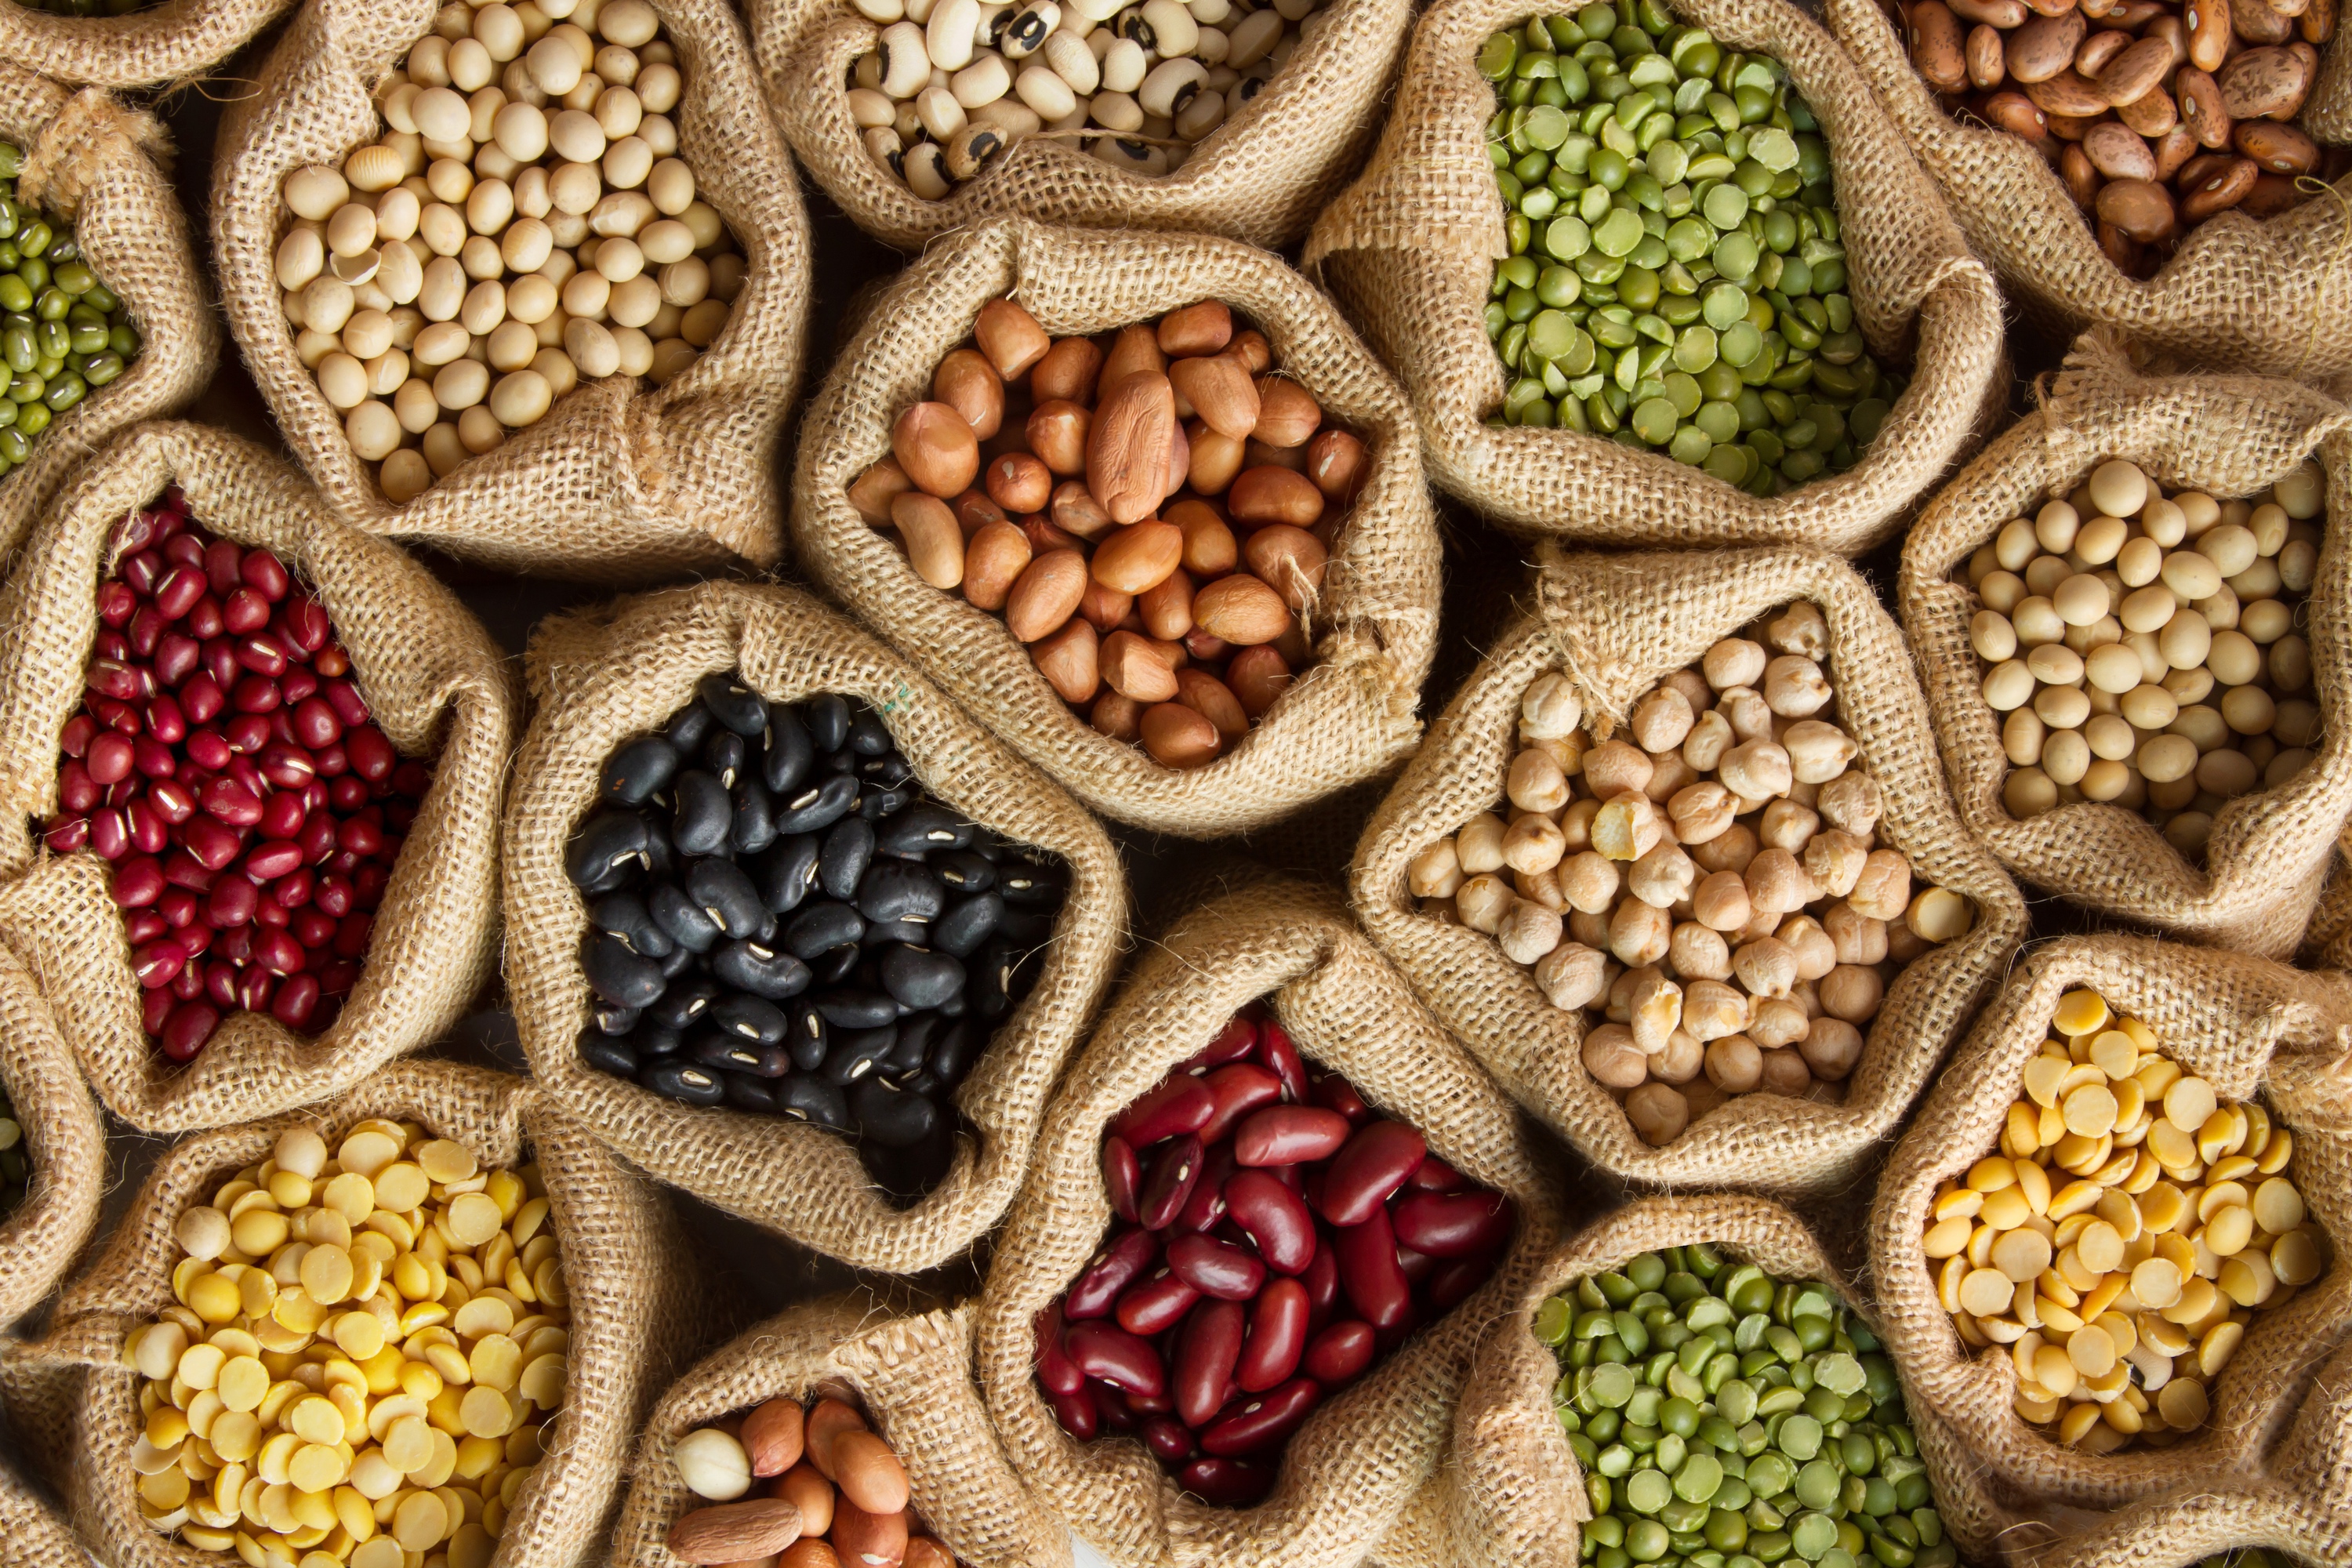 La campagne « Beans is how » de l'ONU a pour but de multiplier la consommation d'haricots par deux d'ici 5 ans. © piyaset, Adobe Stock